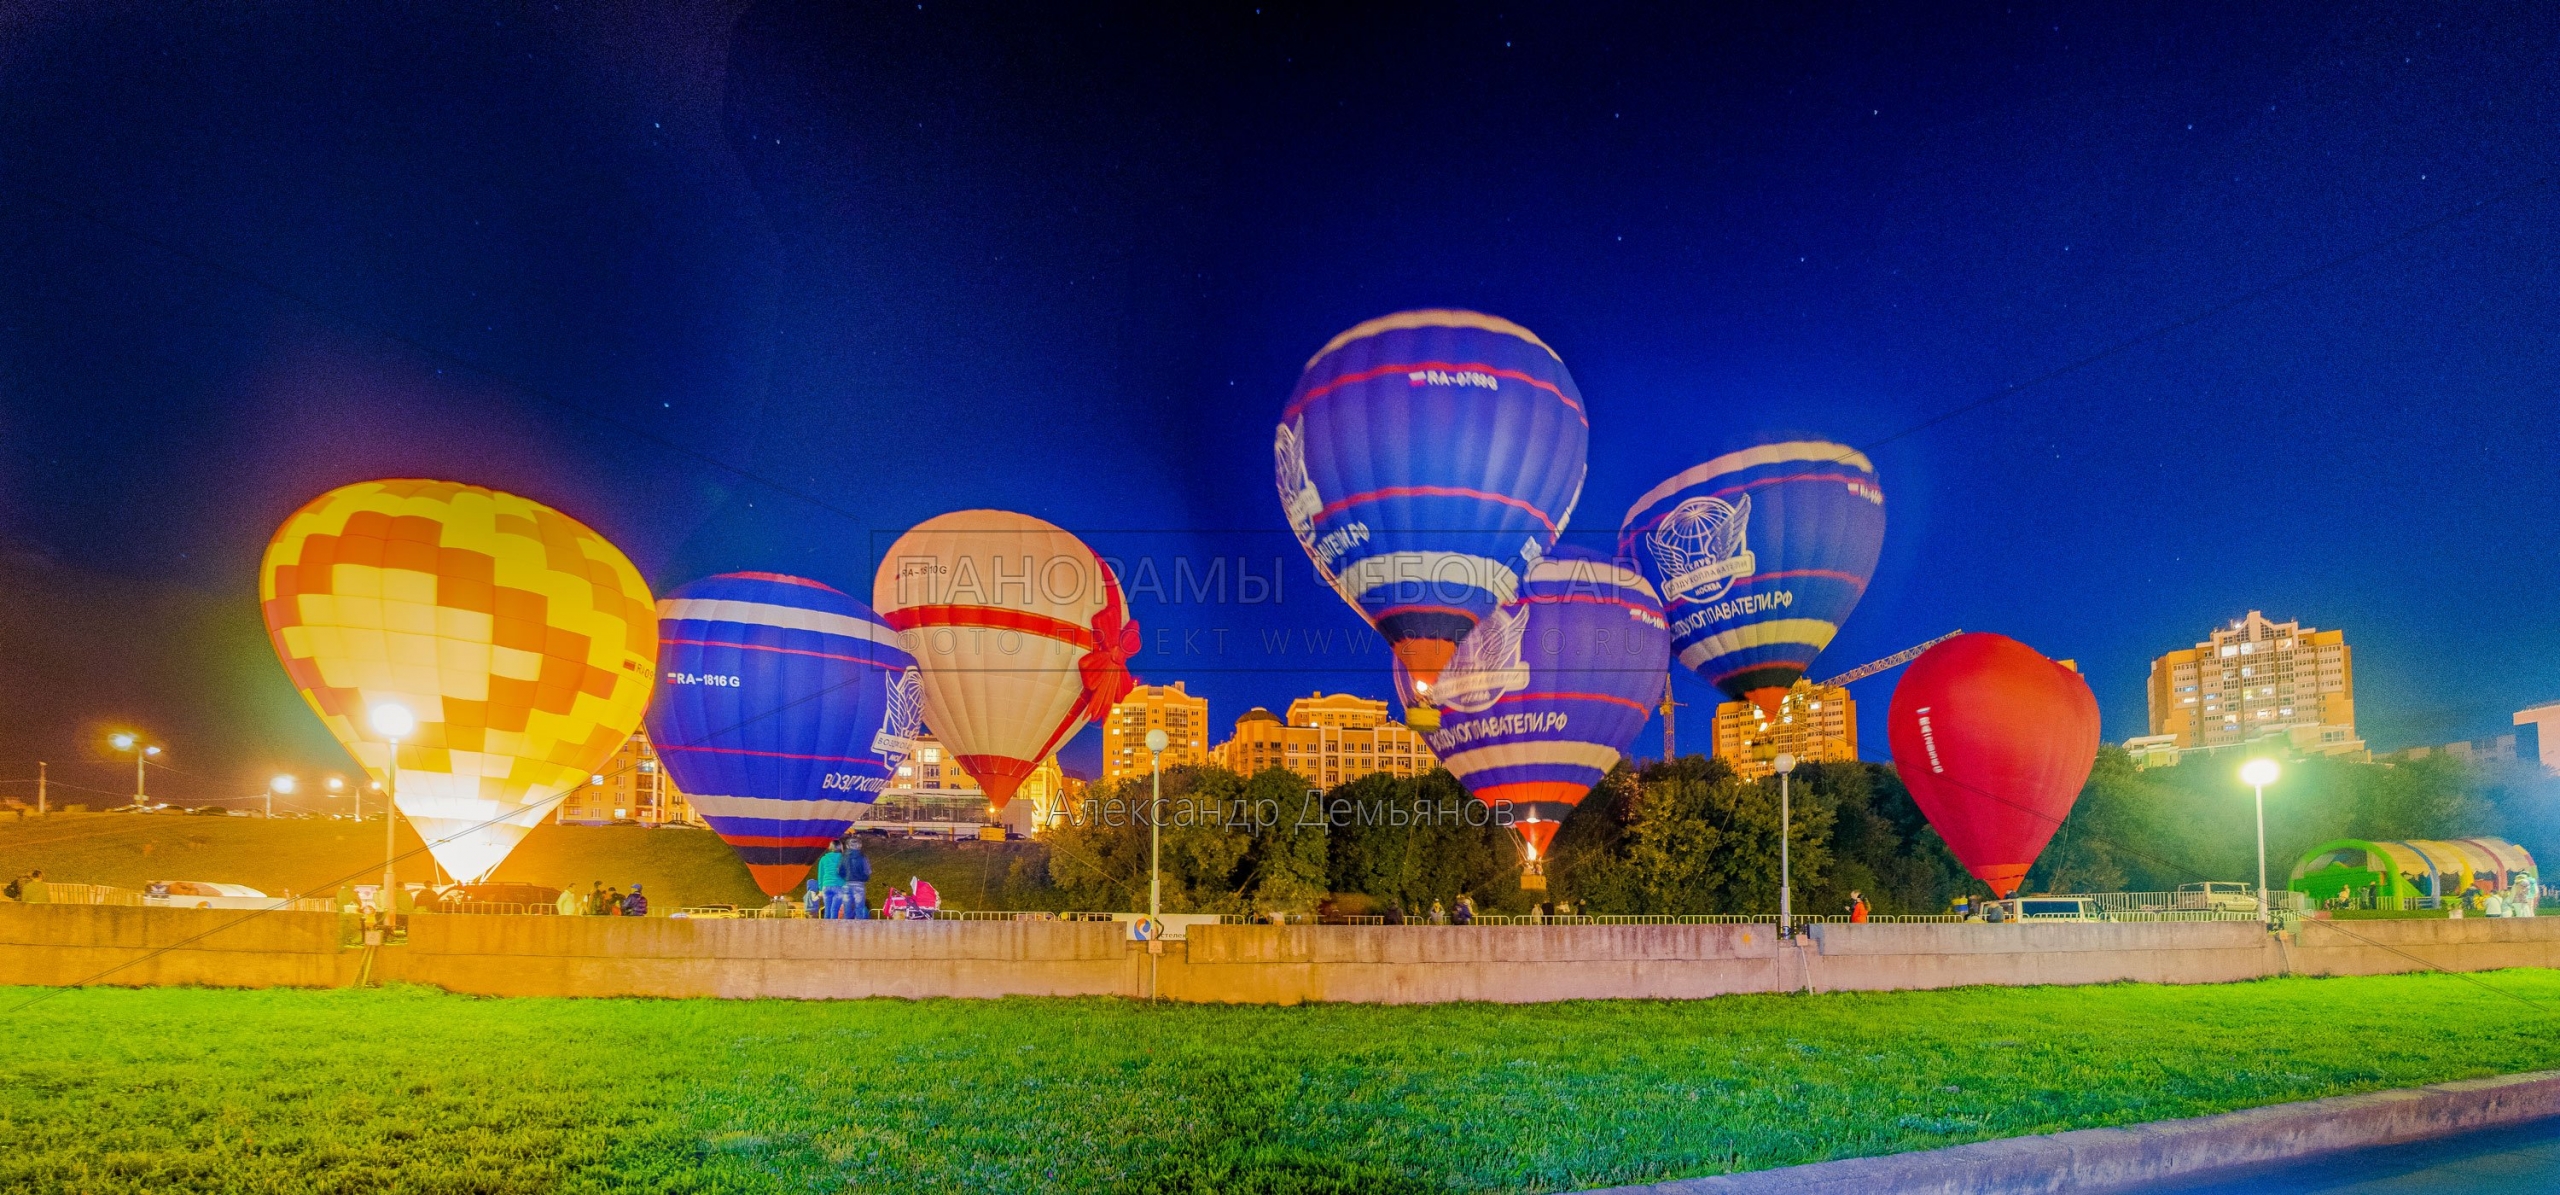 Фестиваль воздушных шаров в День города Чебоксары 2015